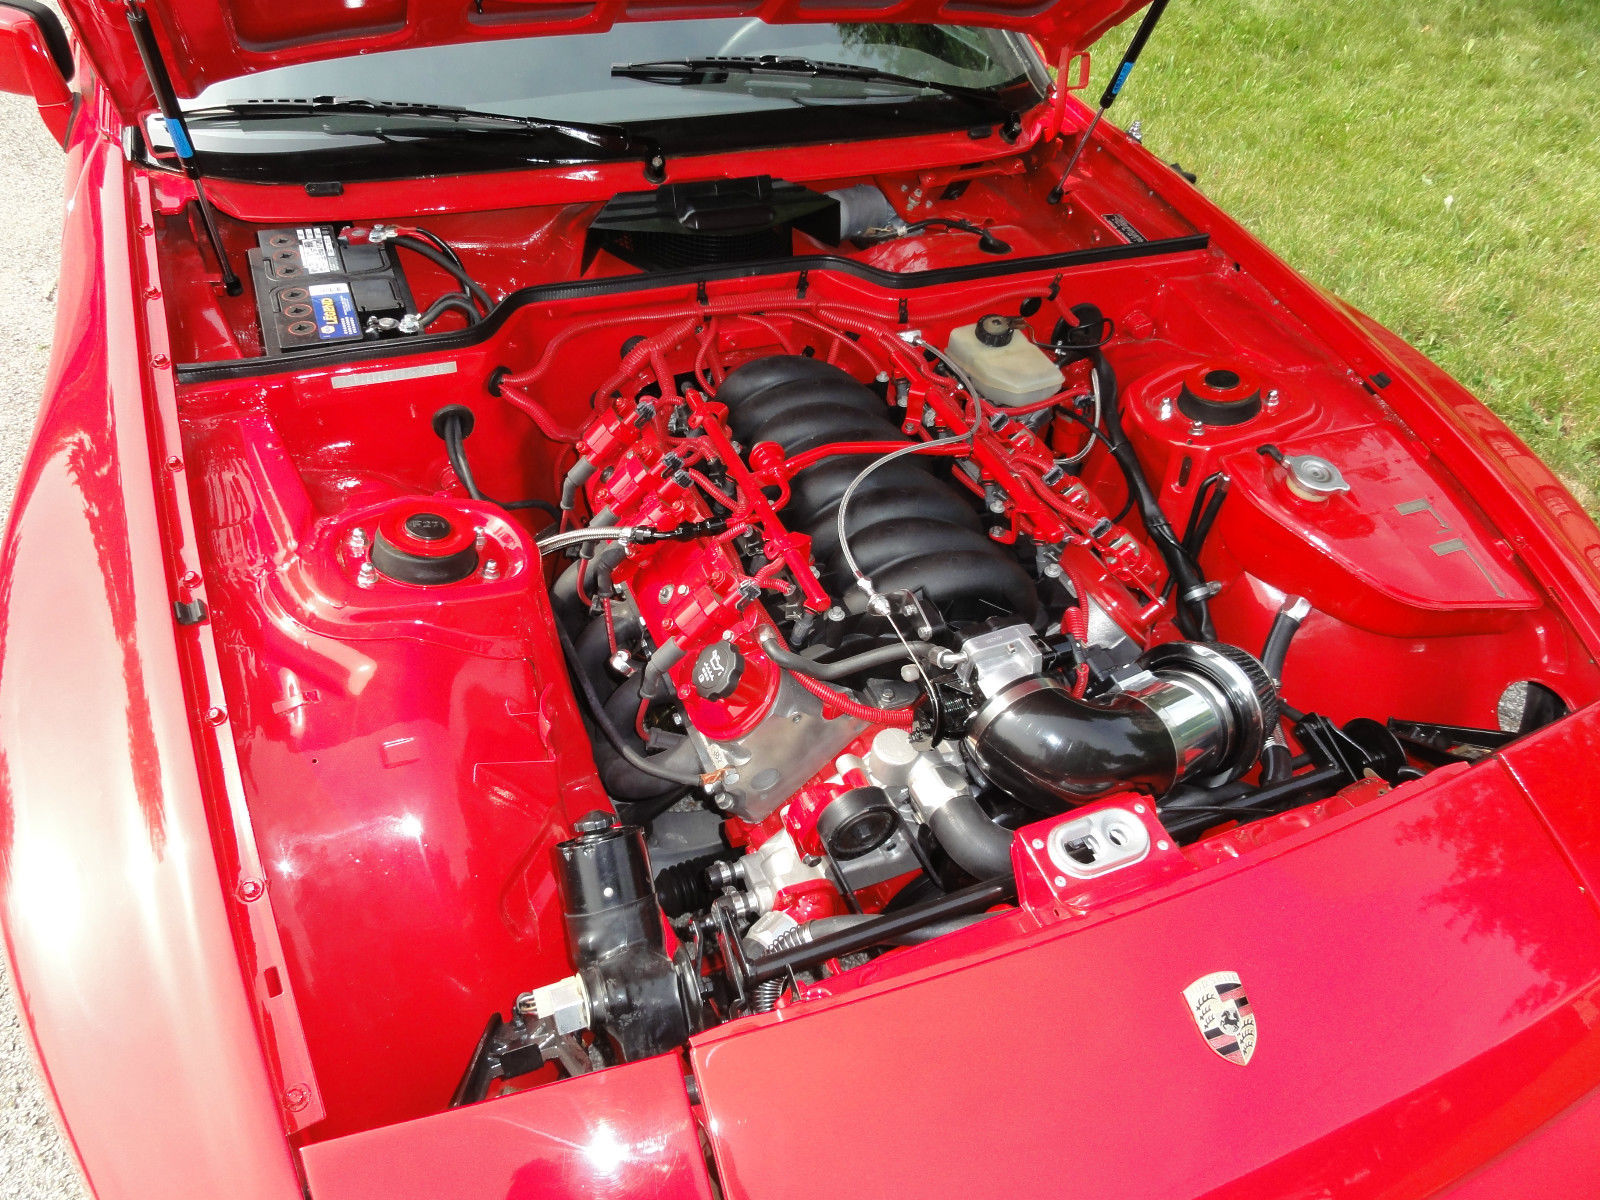 GM + Porsche = A V8 944 - LS1Tech.com